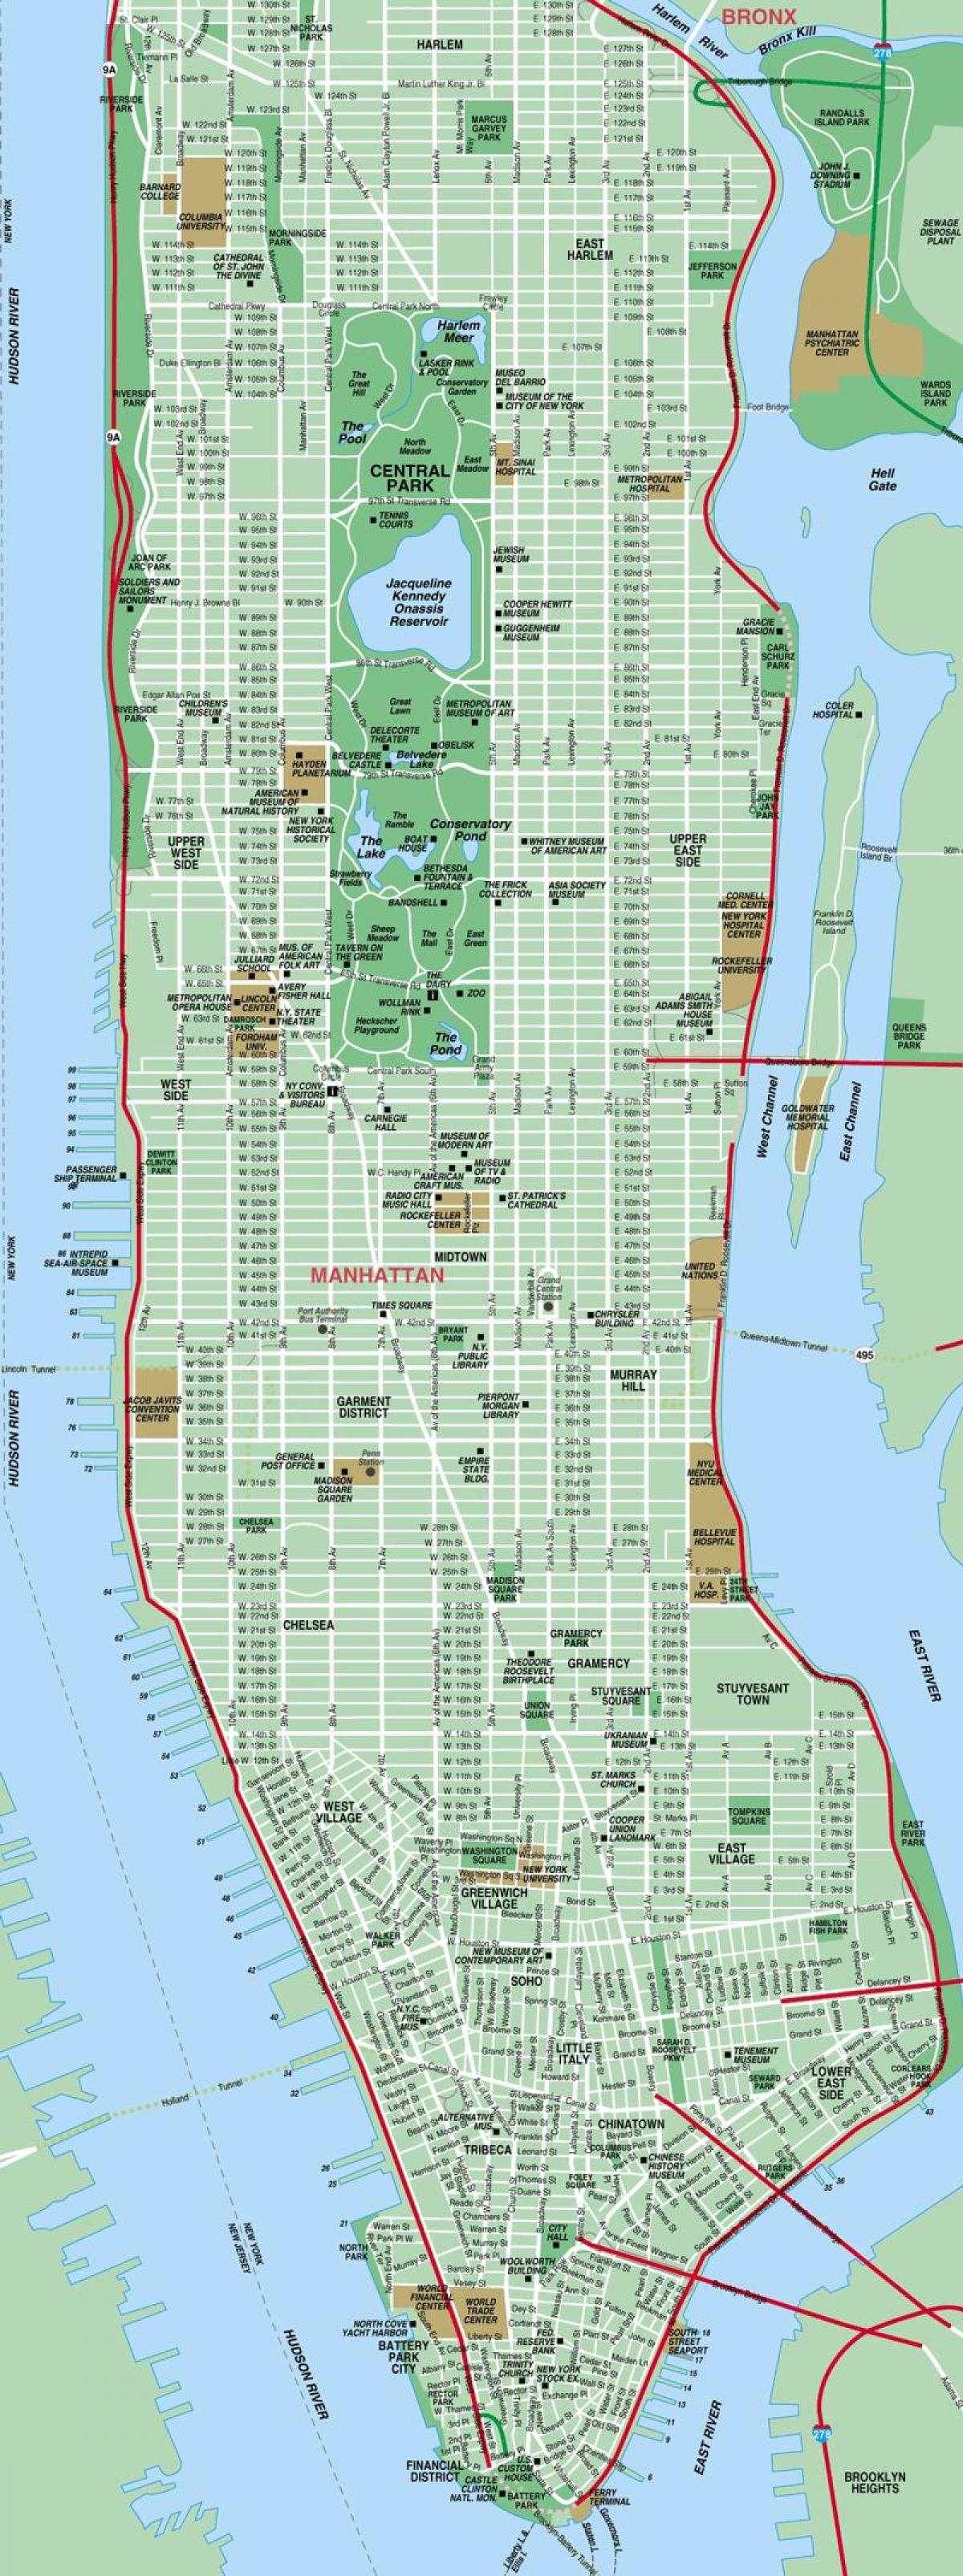 Манхэттен улица на карте высокой детализации